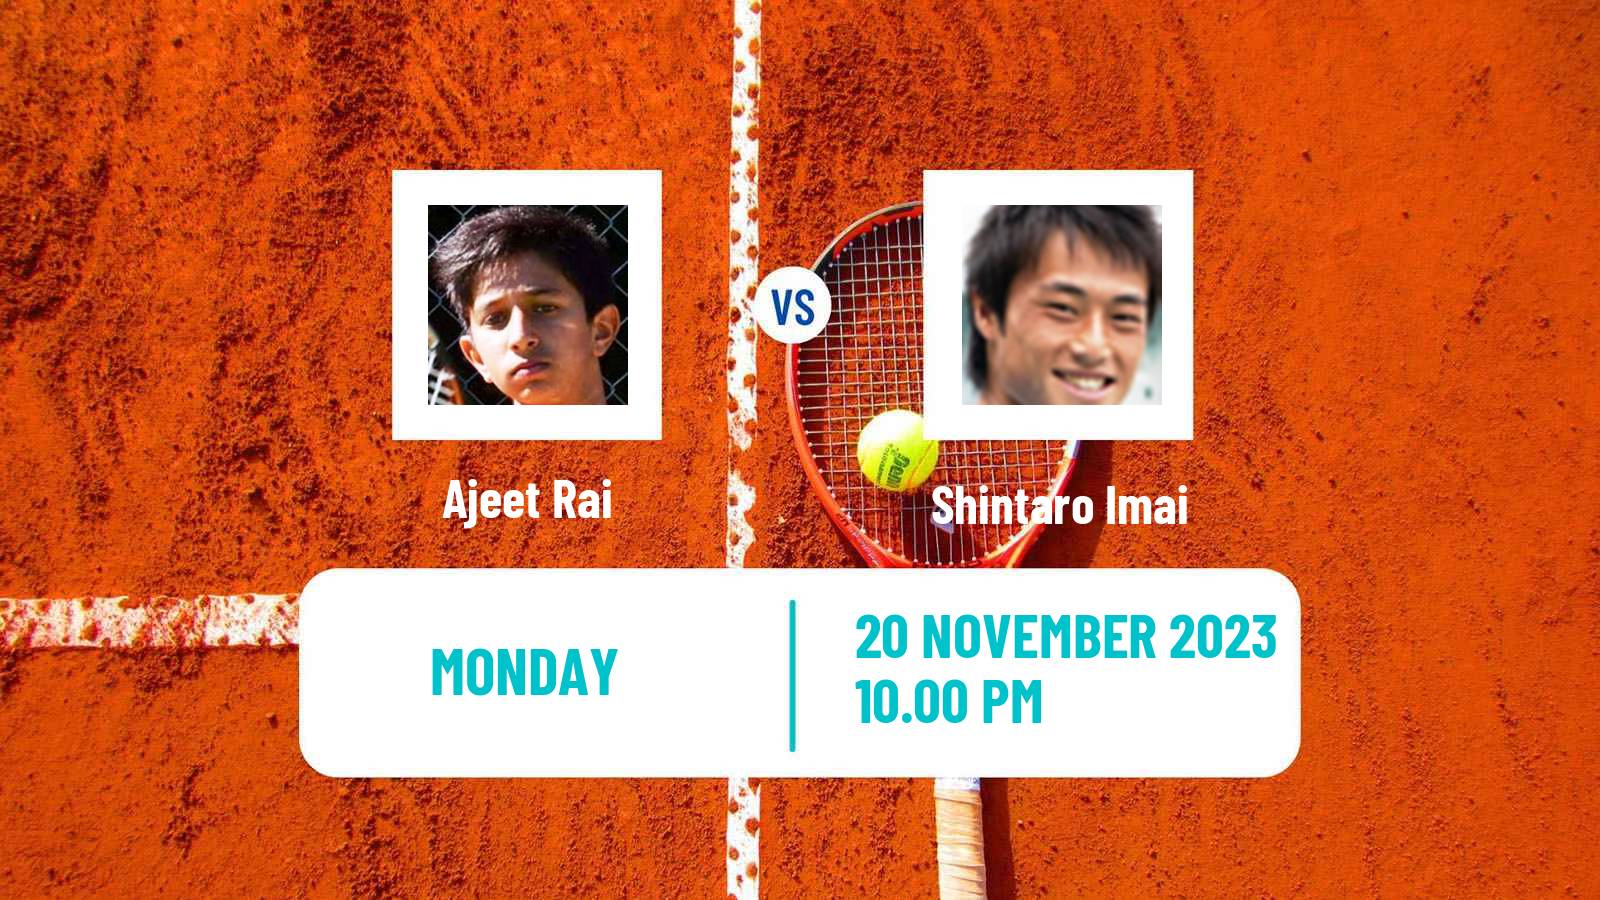 Tennis ITF M25 Brisbane Men 2023 Ajeet Rai - Shintaro Imai